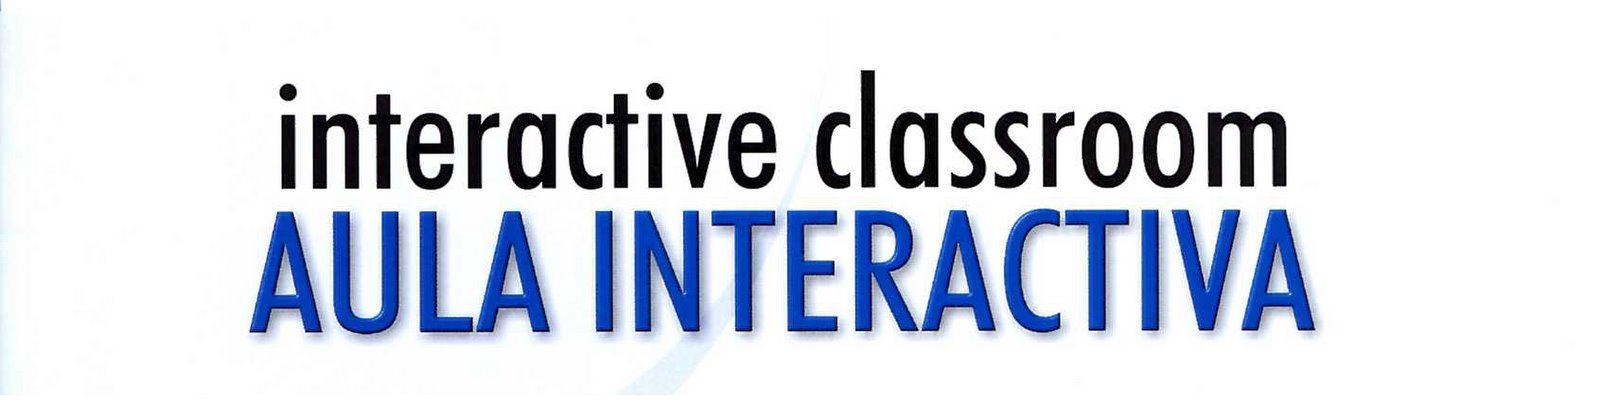 aula interactiva